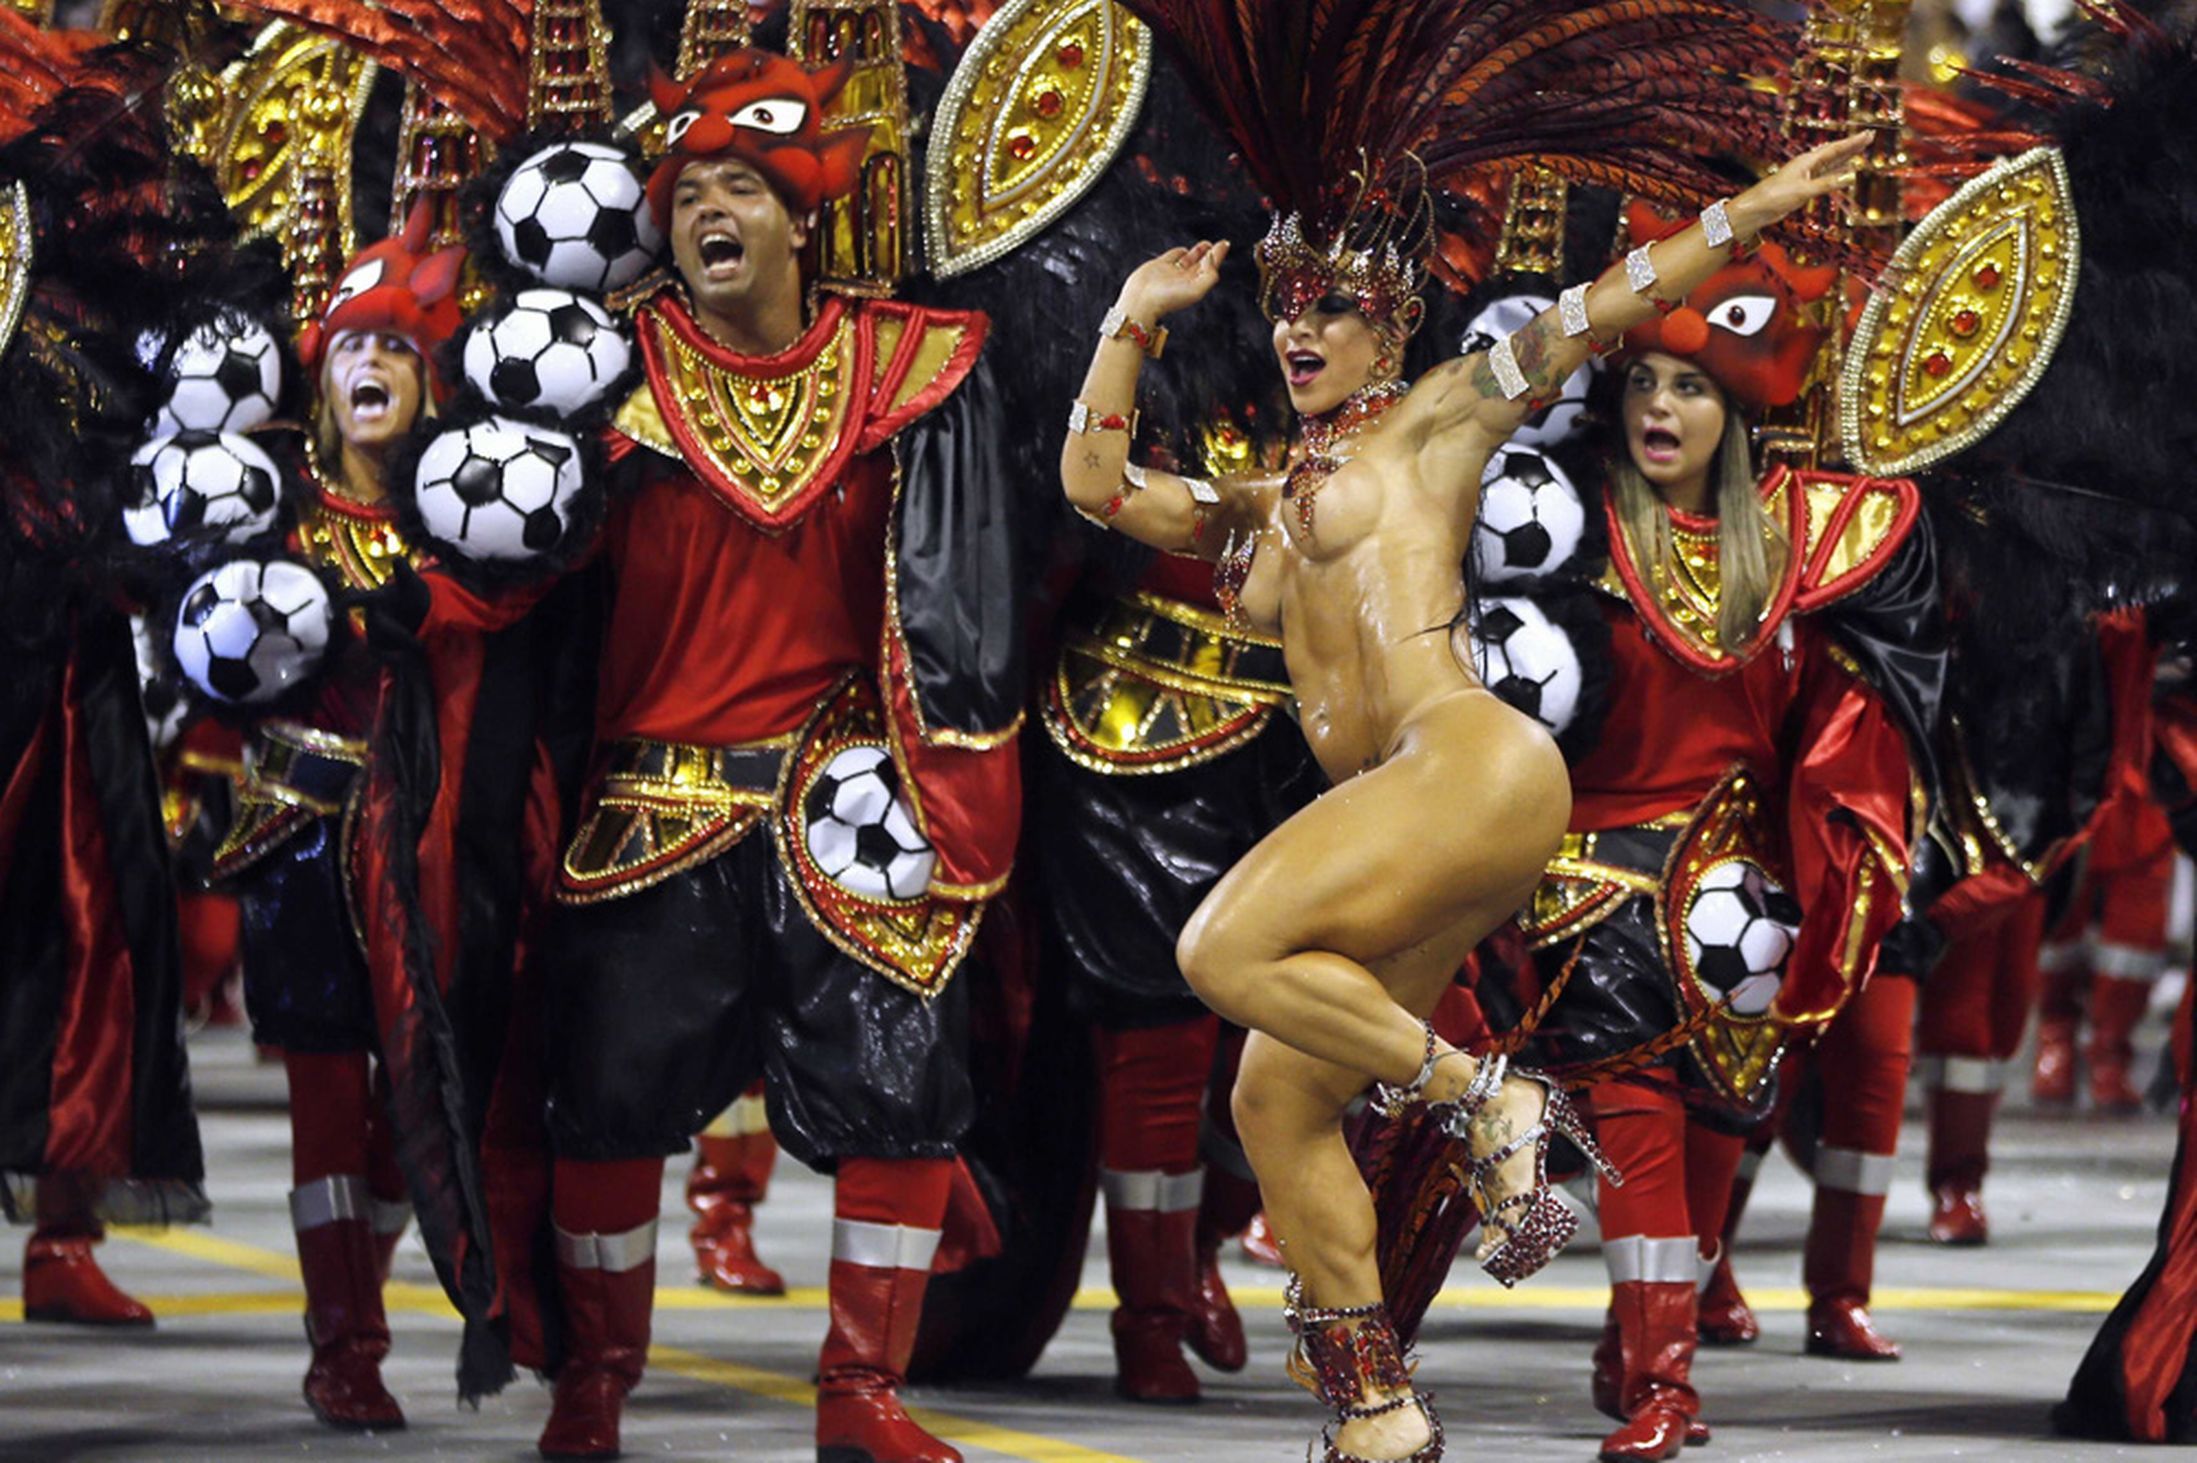 brazil-carnival-parade-sambadrome-31981301-1